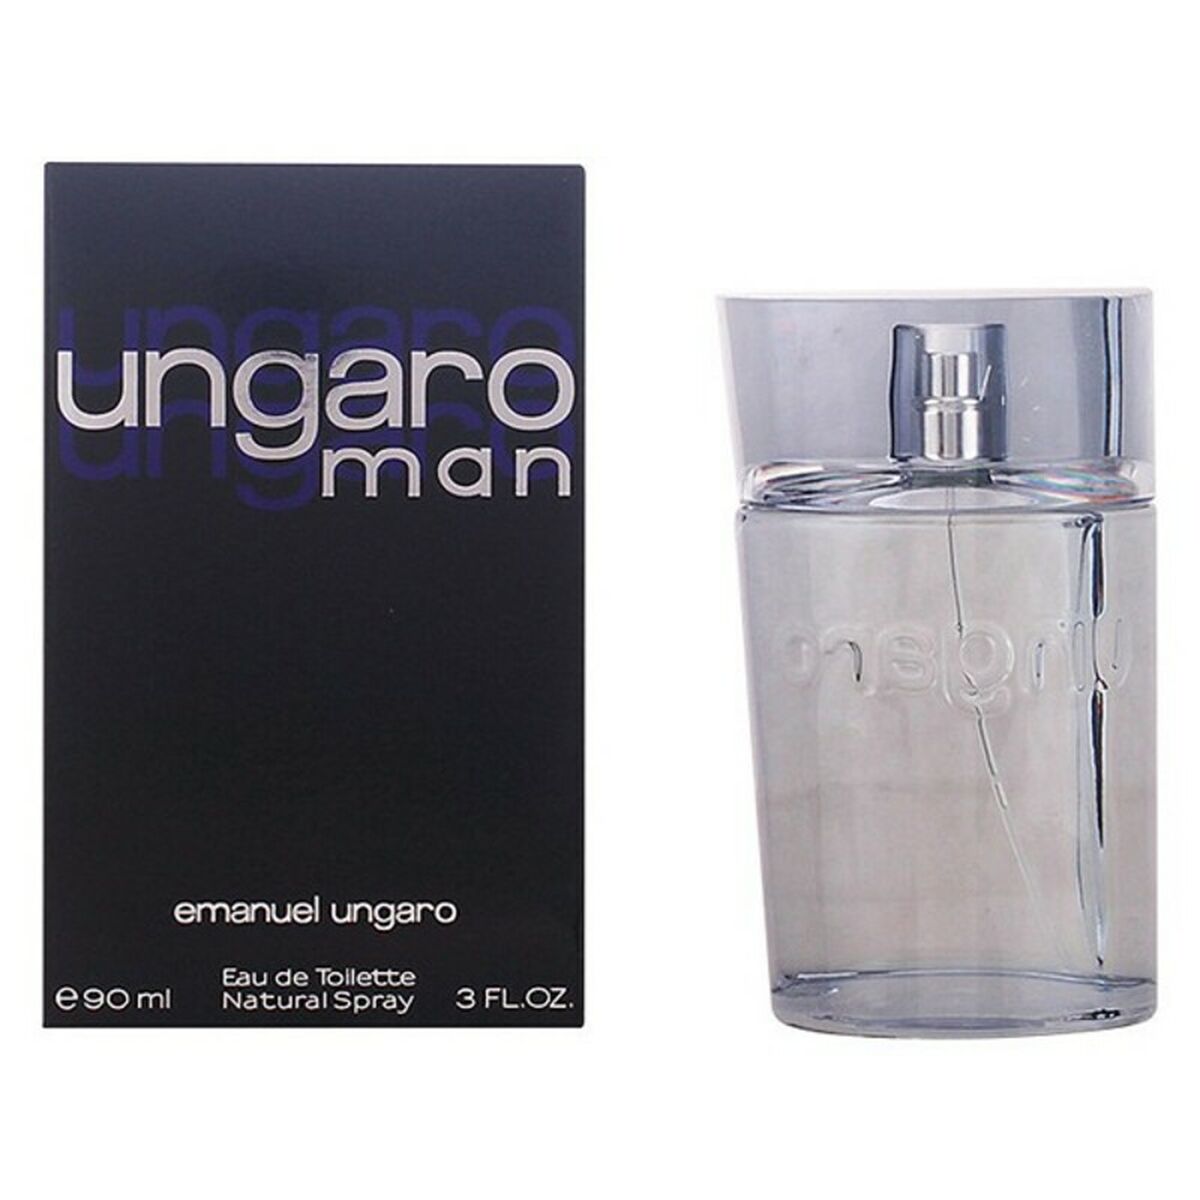 Herenparfum Ungaro Man Emanuel Ungaro EDT (90 ml)